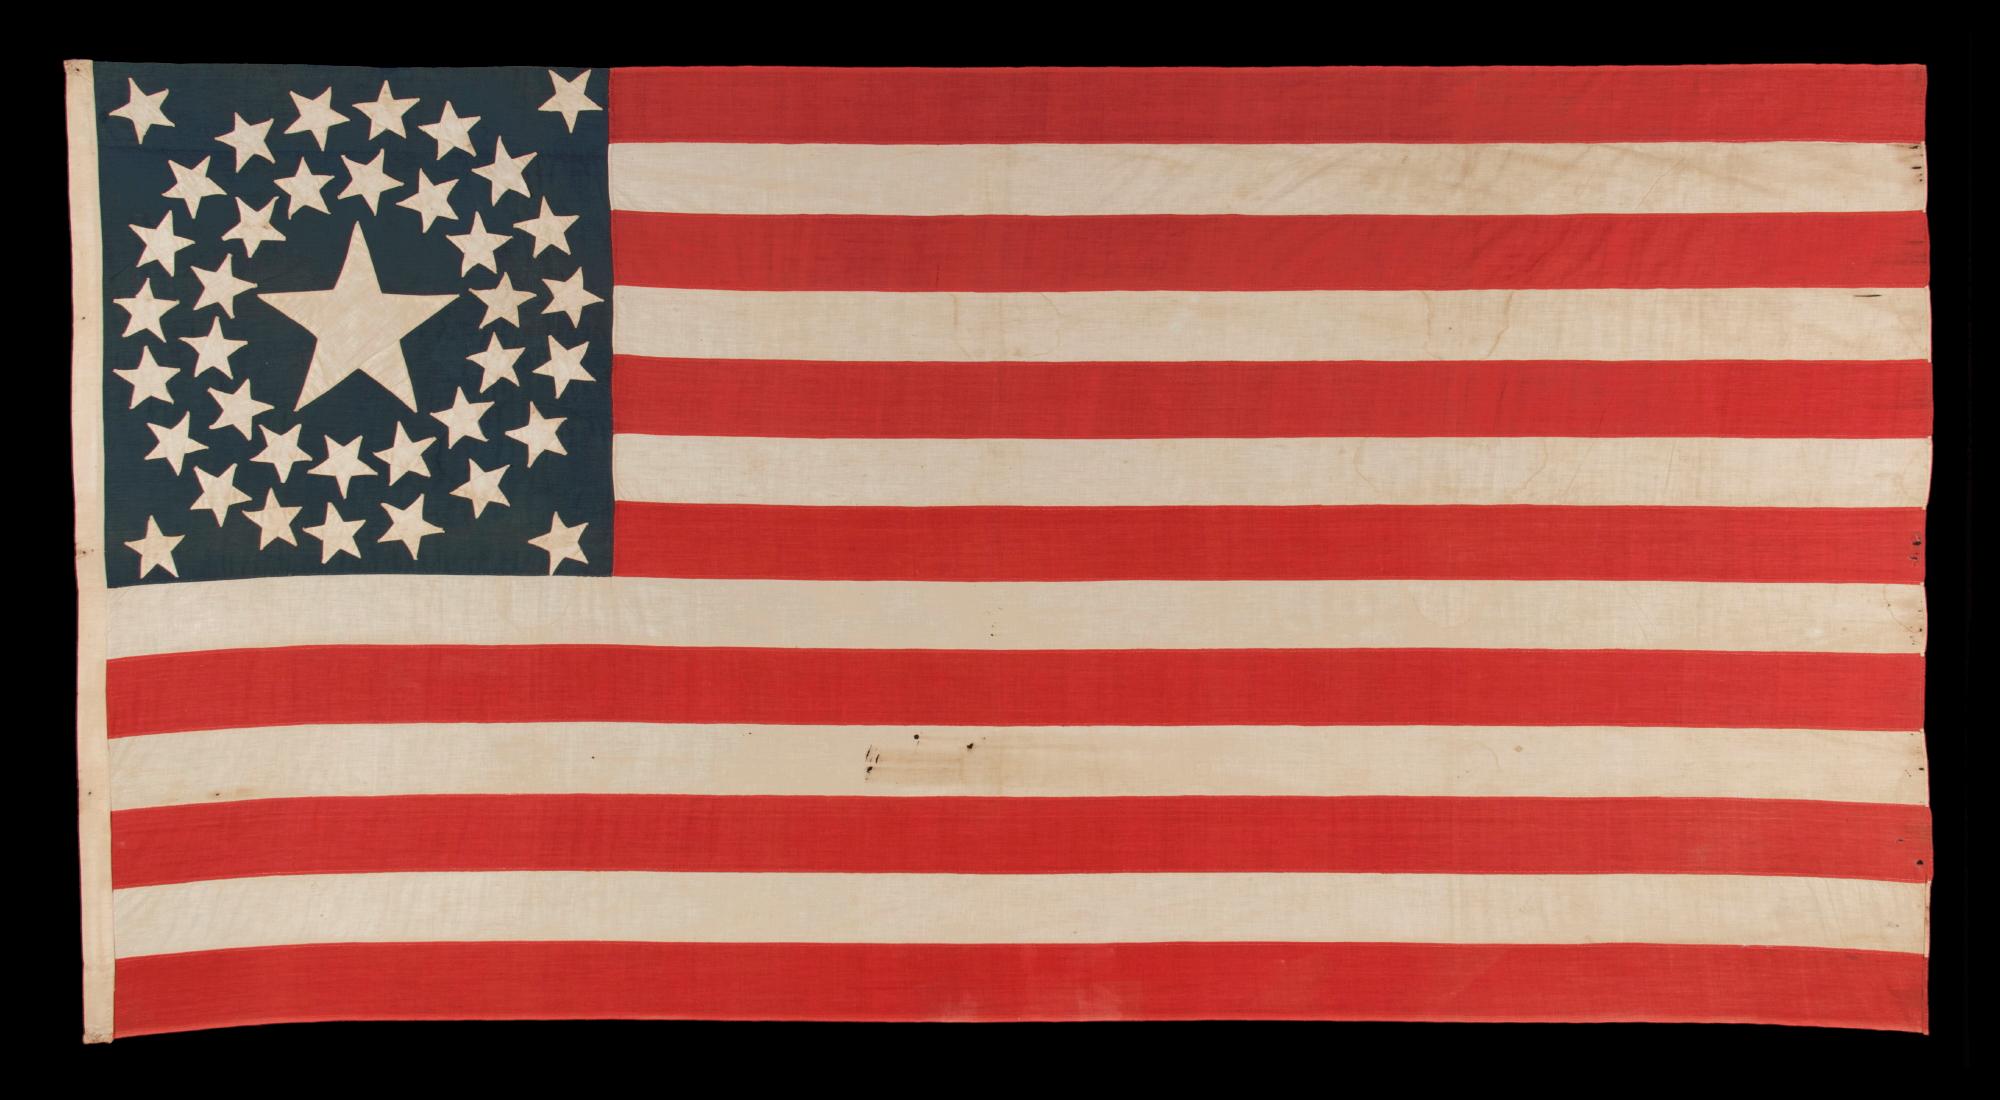 38 STERNE ANTIKE AMERIKANISCHE FLAGGE MIT EINEM DOPPELTEN KRANZ, DER EINEN RIESIGEN STERN IN DER MITTE AUFWEIST, SPIEGELT DIE ZEIT DER COLORADO-STAATLICHKEIT, 1876-1889:

amerikanische Nationalflagge mit 38 Sternen, komplett aus gewebter